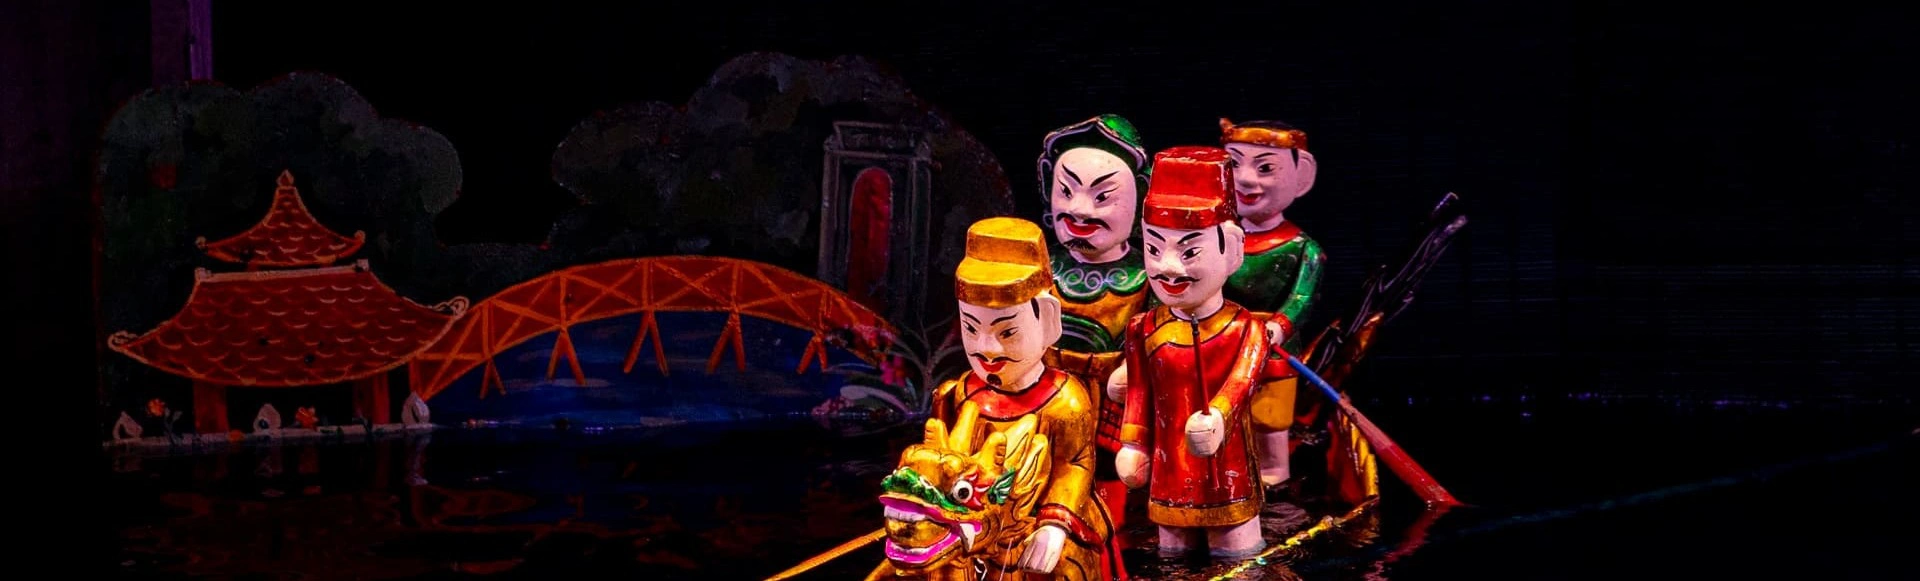 На спектакли вьетнамского кукольного театра Тханг Лонг открылась дополнительная продажа билетов